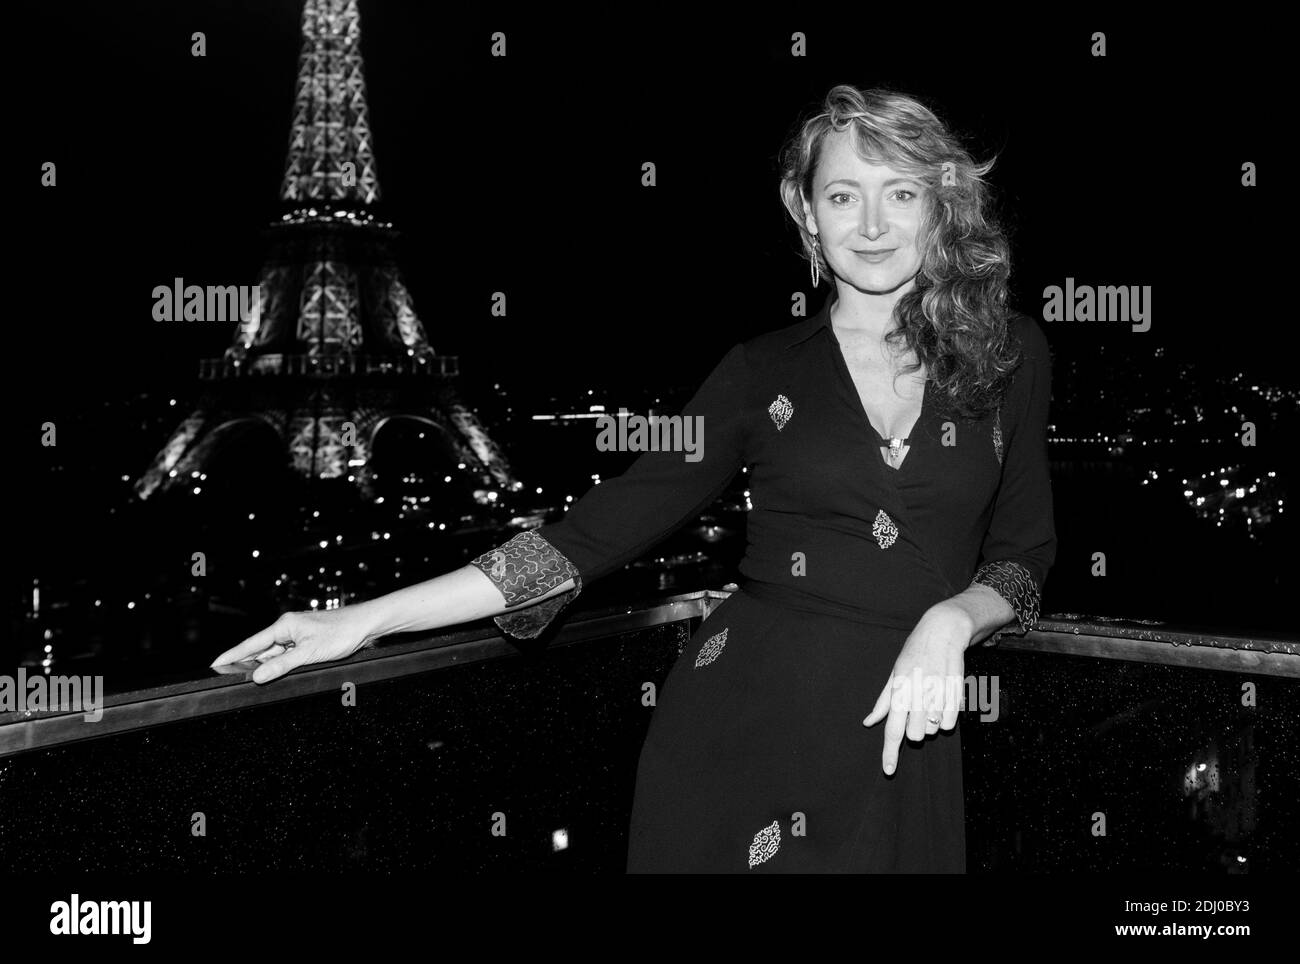 Exclusive - Julie Ferrier partecipa all'apertura della Suite Eiffel all'hotel Shangri-la, il 10 maggio 2016, a Parigi. Foto di Laurent Zabulon/ABACAPRESS.COM Foto Stock